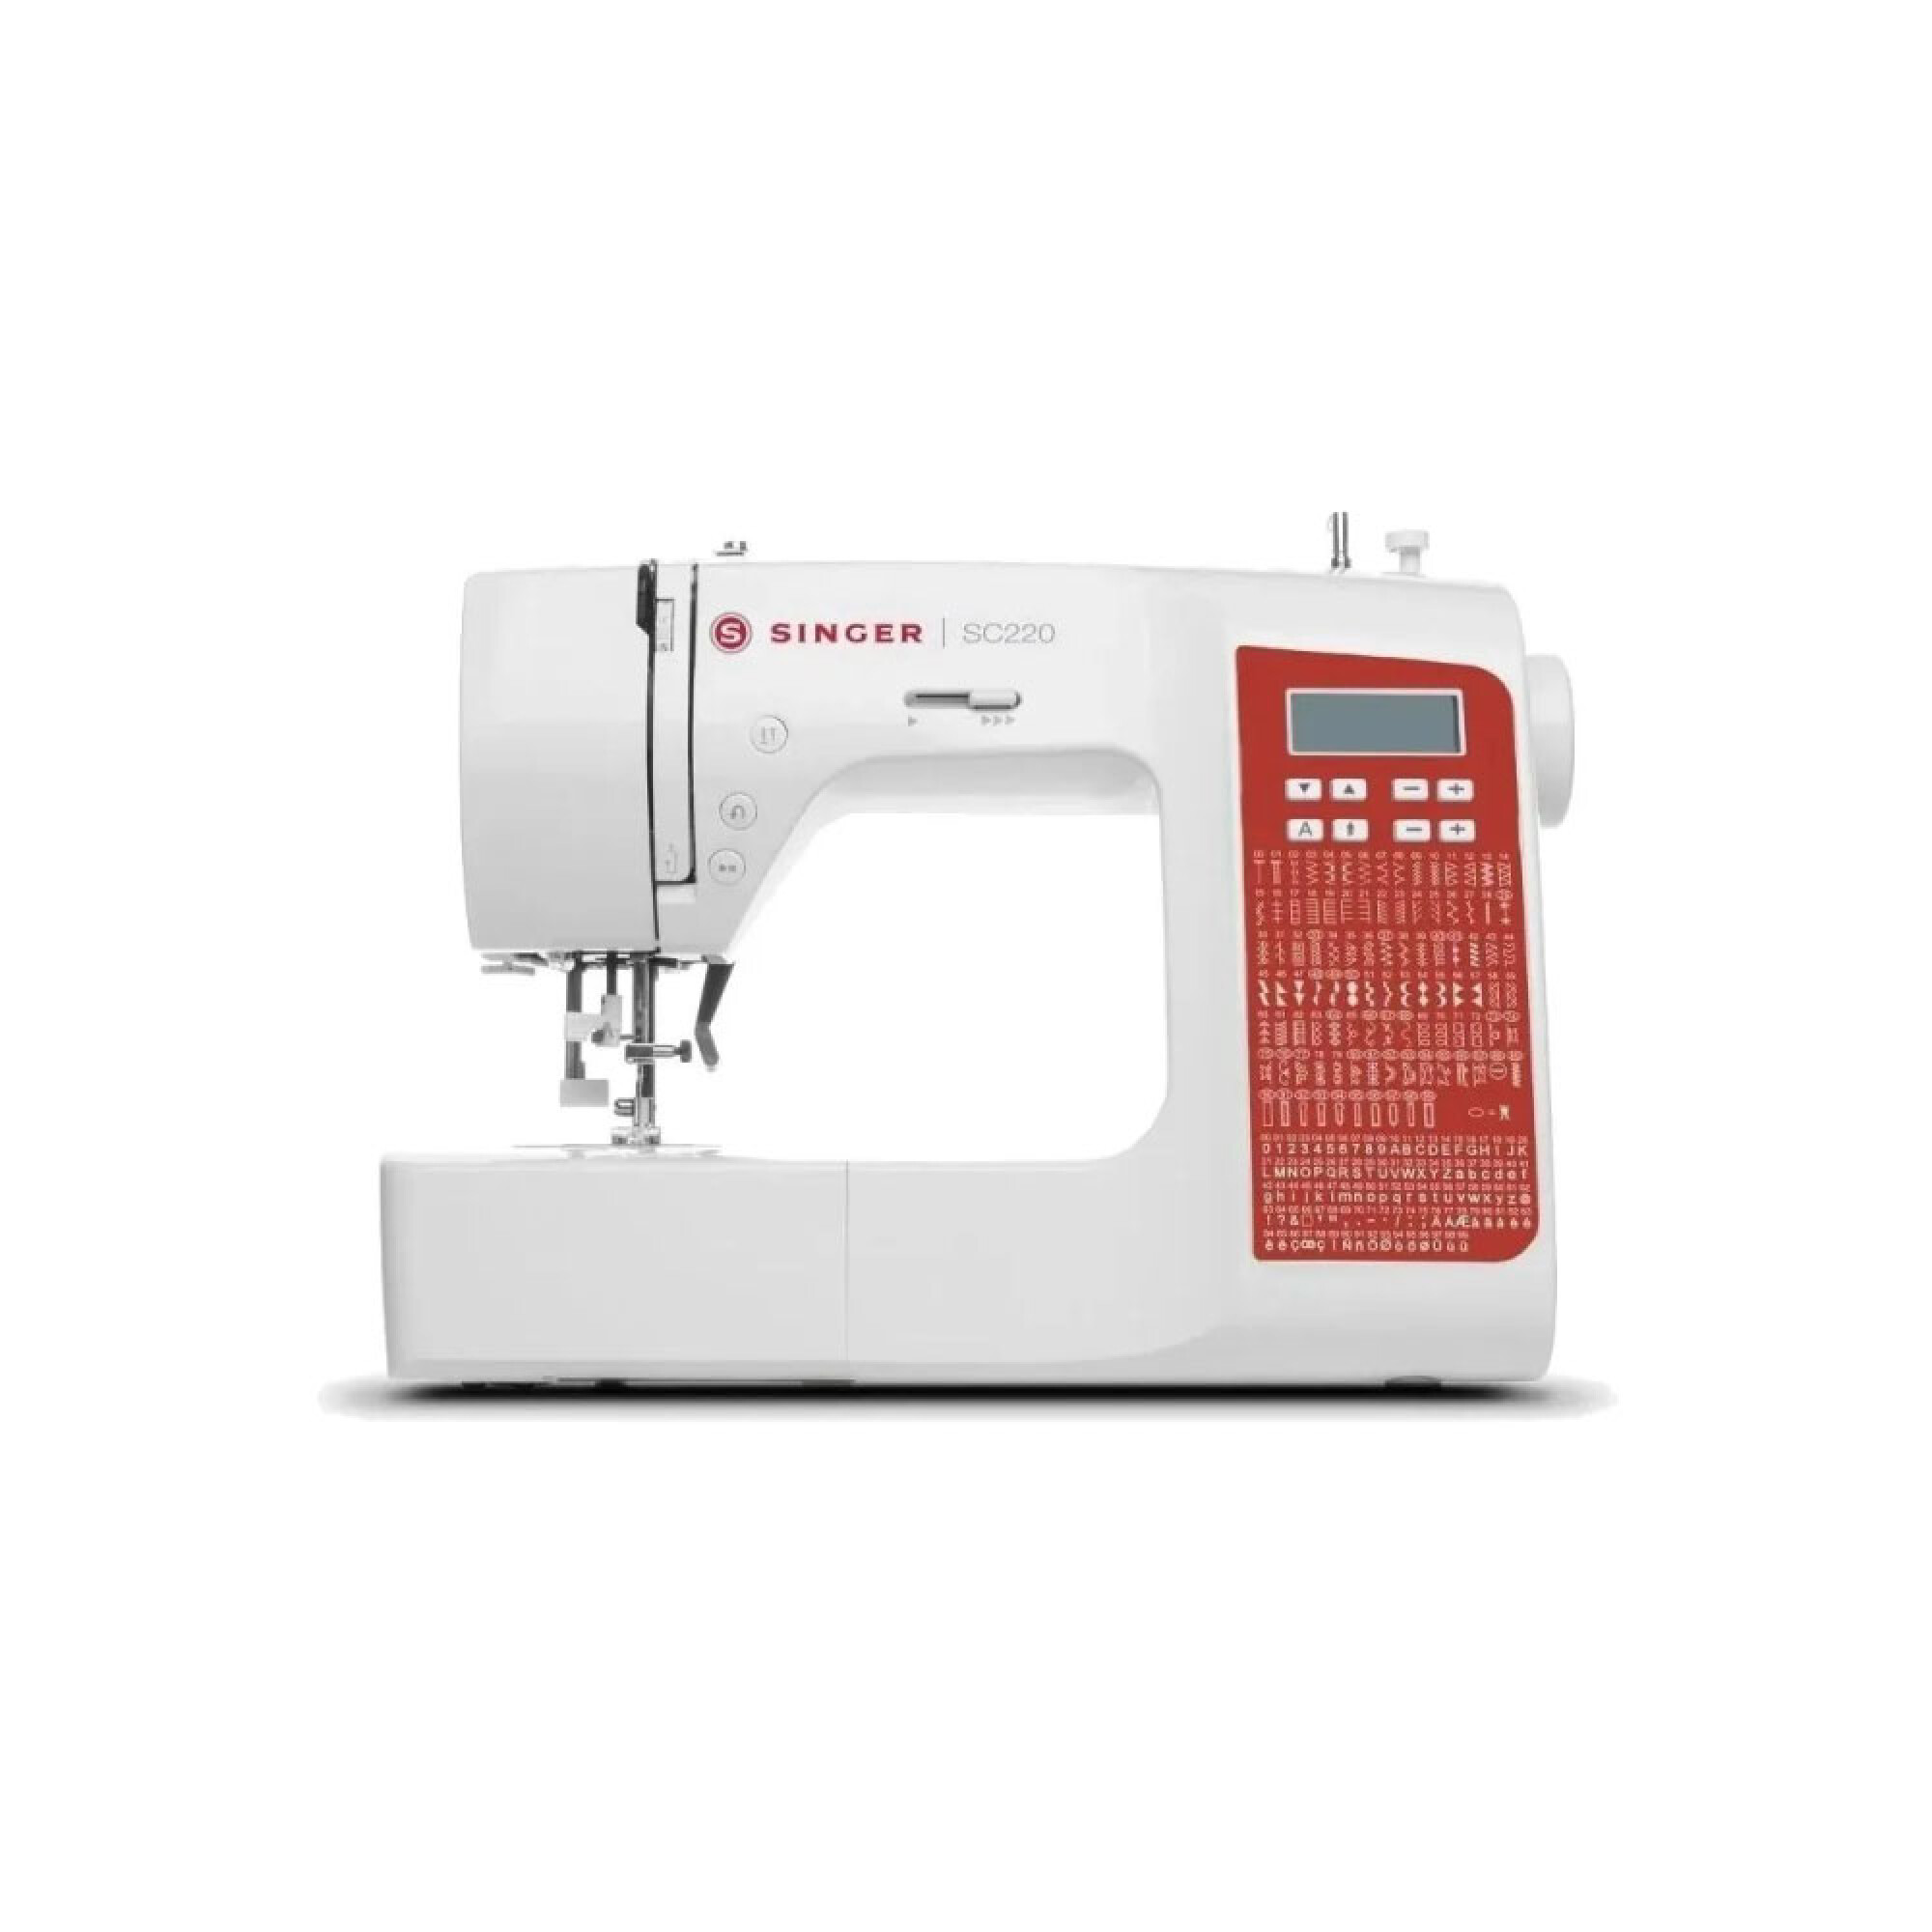 Maquina de coser Singer 23p M3205